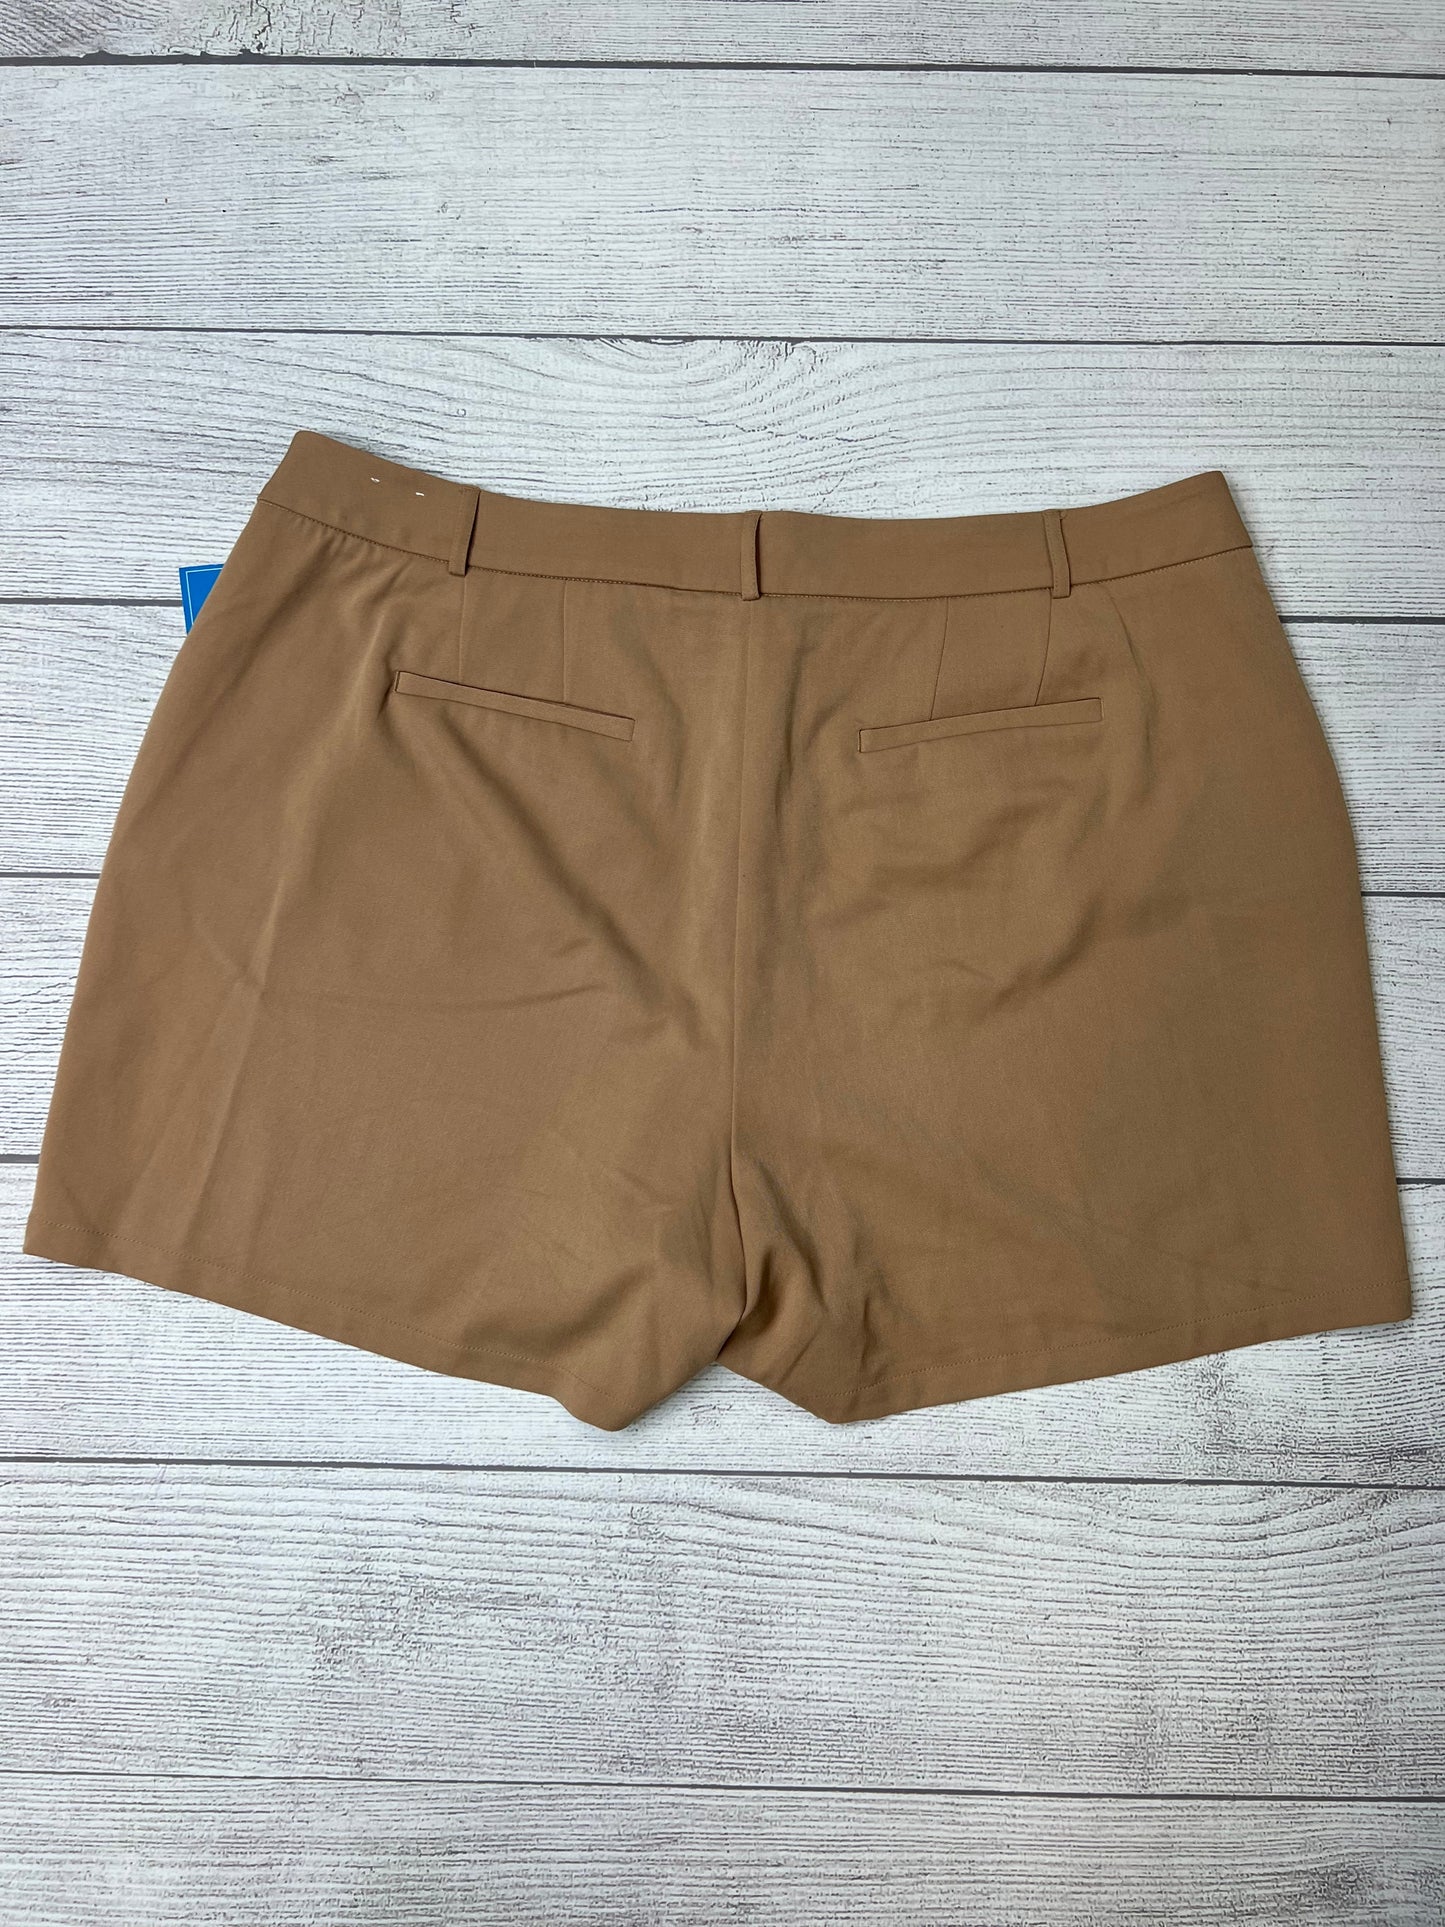 Tan Shorts Lane Bryant, Size 24